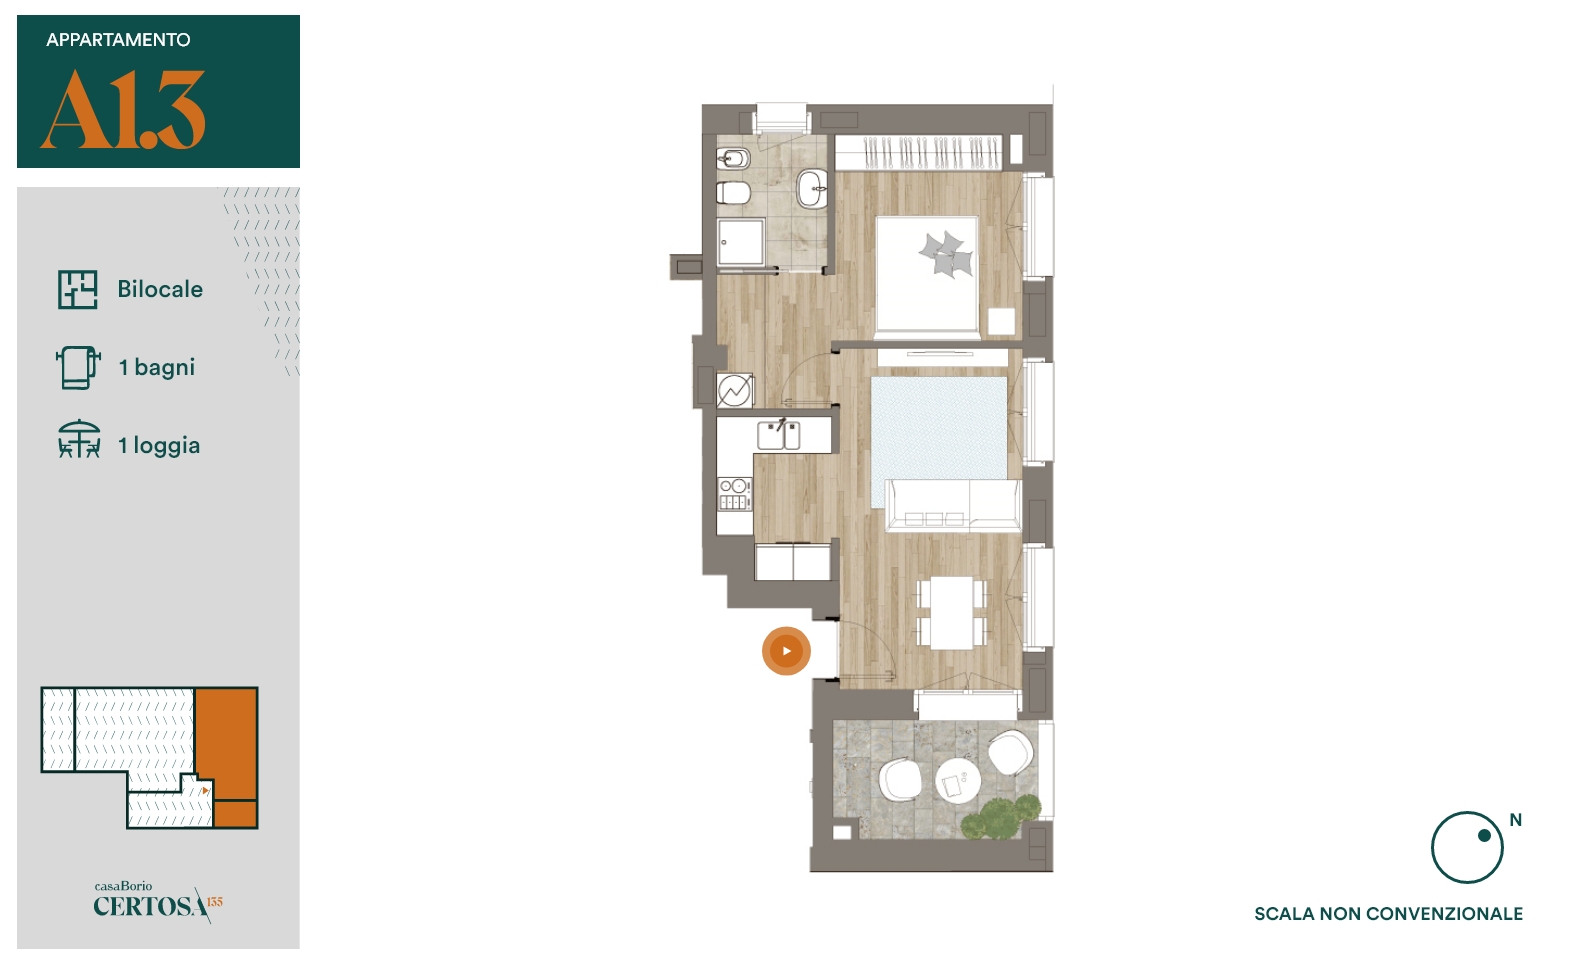 Appartamento A1.3 - Bilocale